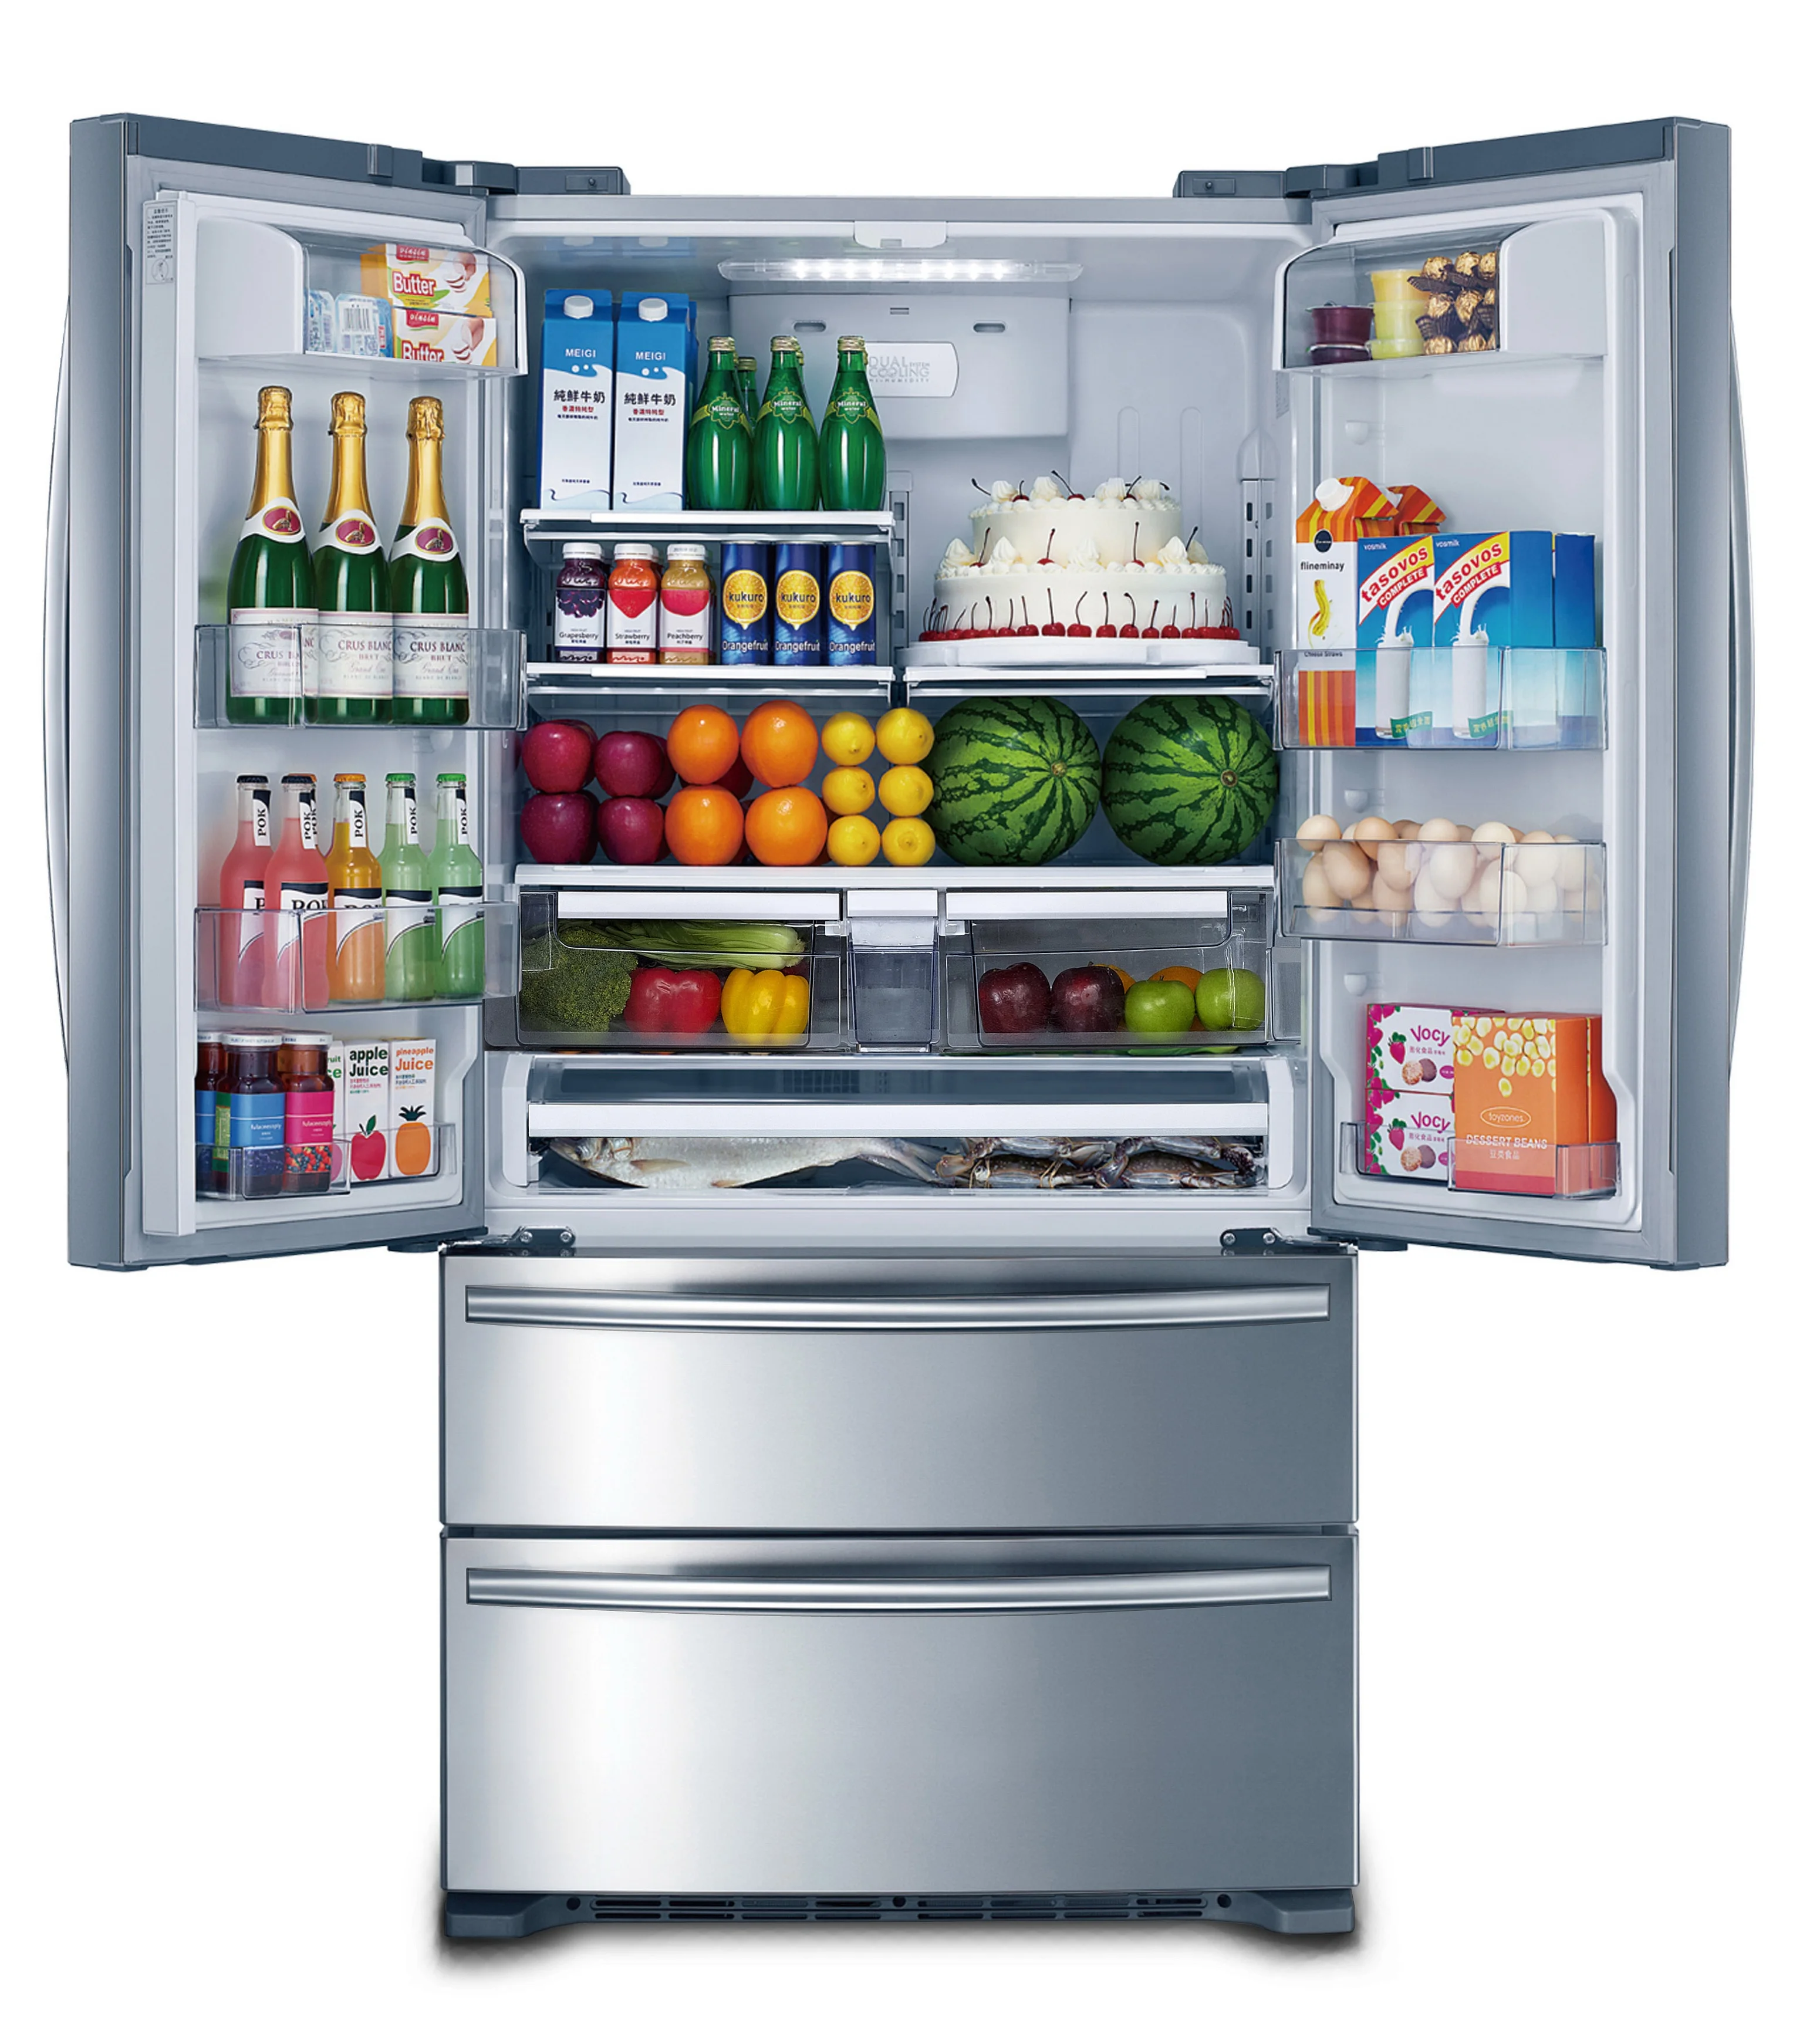 Холодильник черкесск. Холодильник Freezer Refrigerator. Холодильник трехкамерный Hyundai cm4045fix total no Frost, French Door, нержавеющая сталь. Холодильник Hi hcd020601w. Система ноу Фрост в холодильнике.